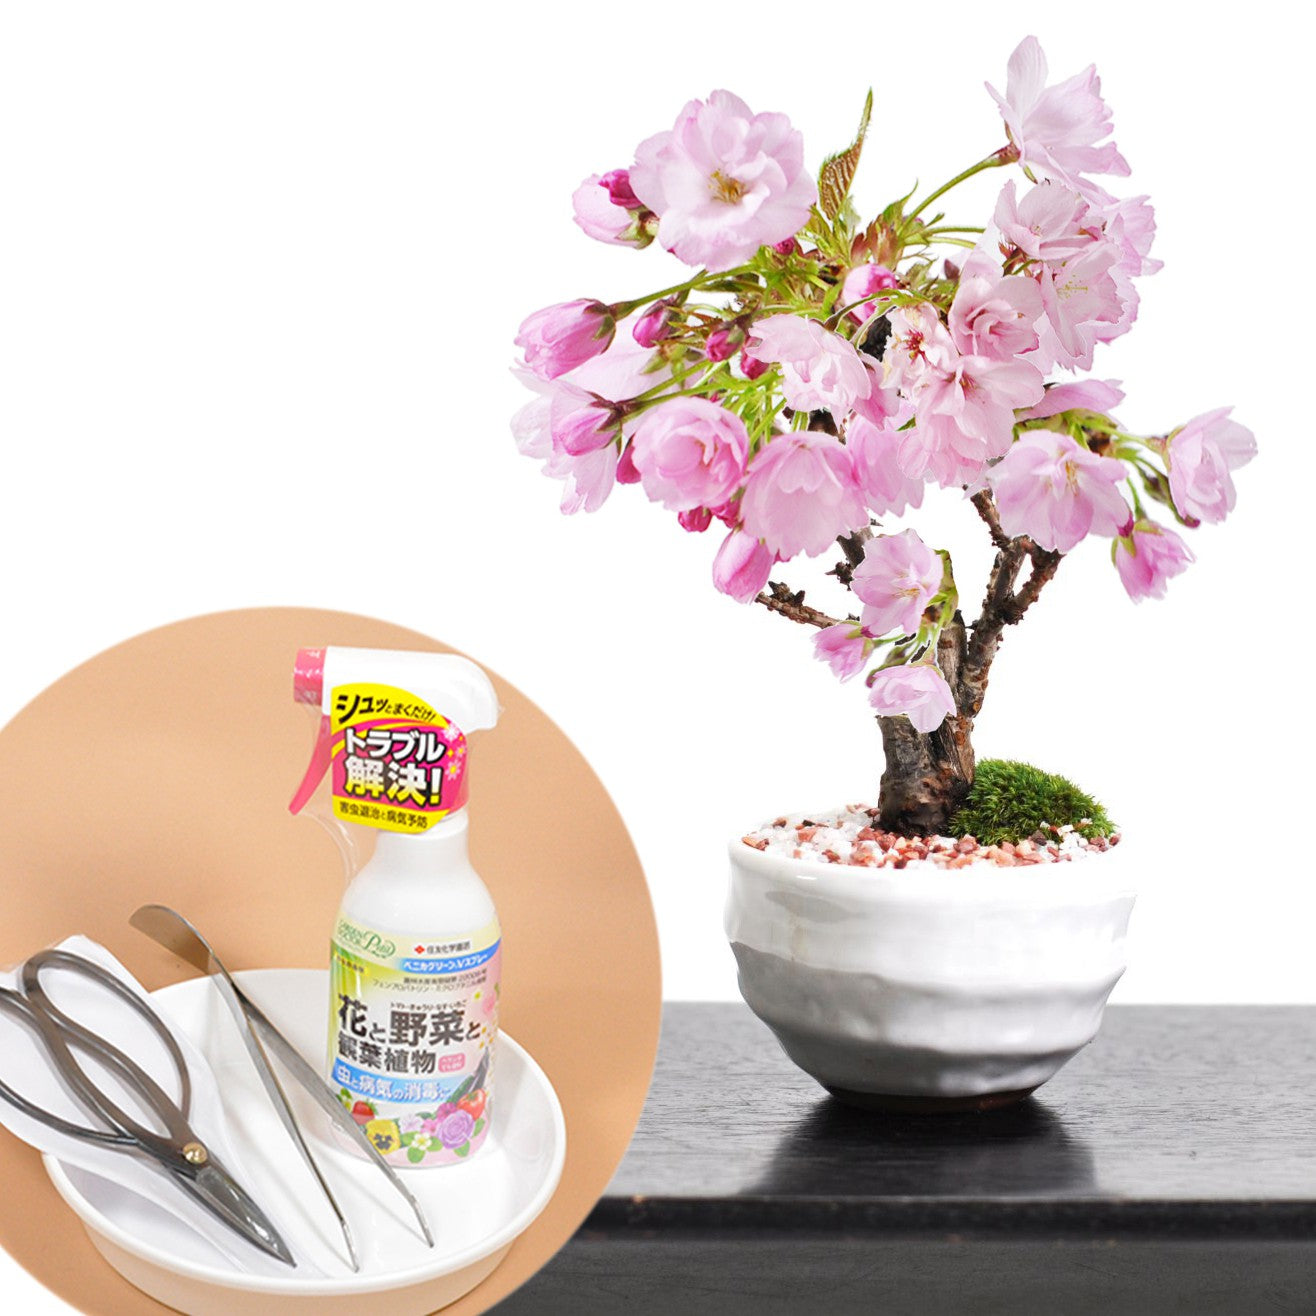 開花調整5月に咲くミニ桜とはじめての道具セット